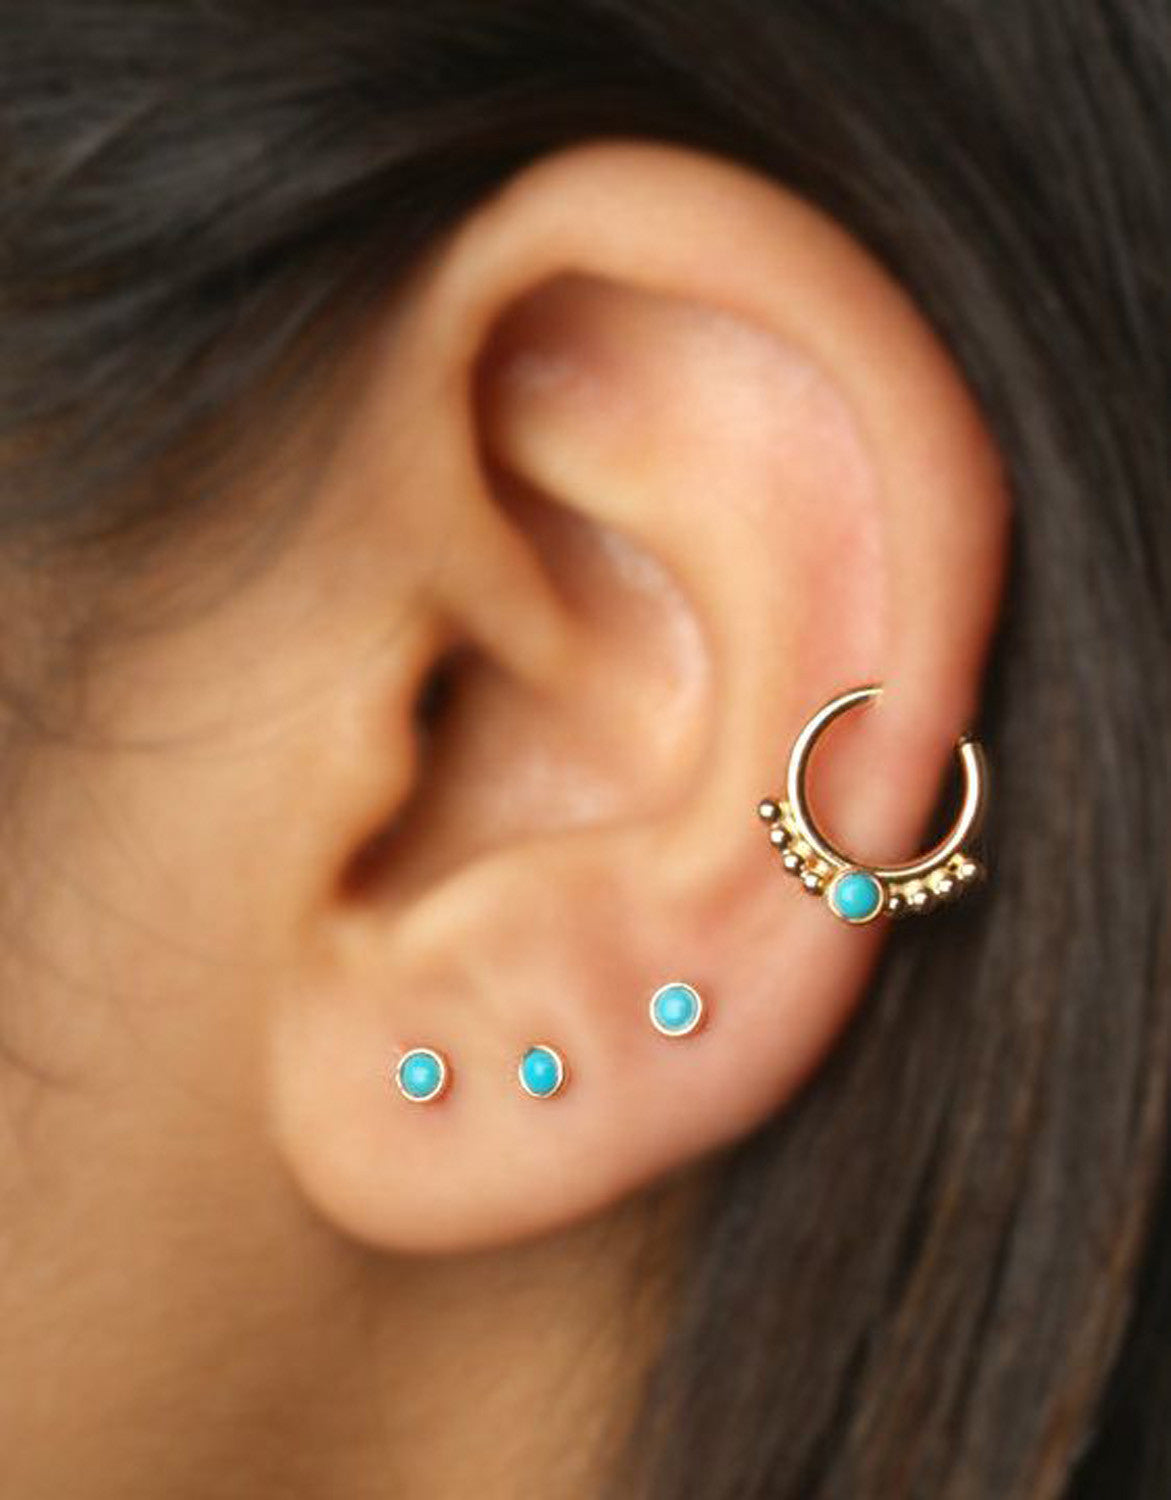 Ear Piercing Ideas - Gorgeous Turquoise Helix Hoop Earring Jewelry - MyBodiArt.com